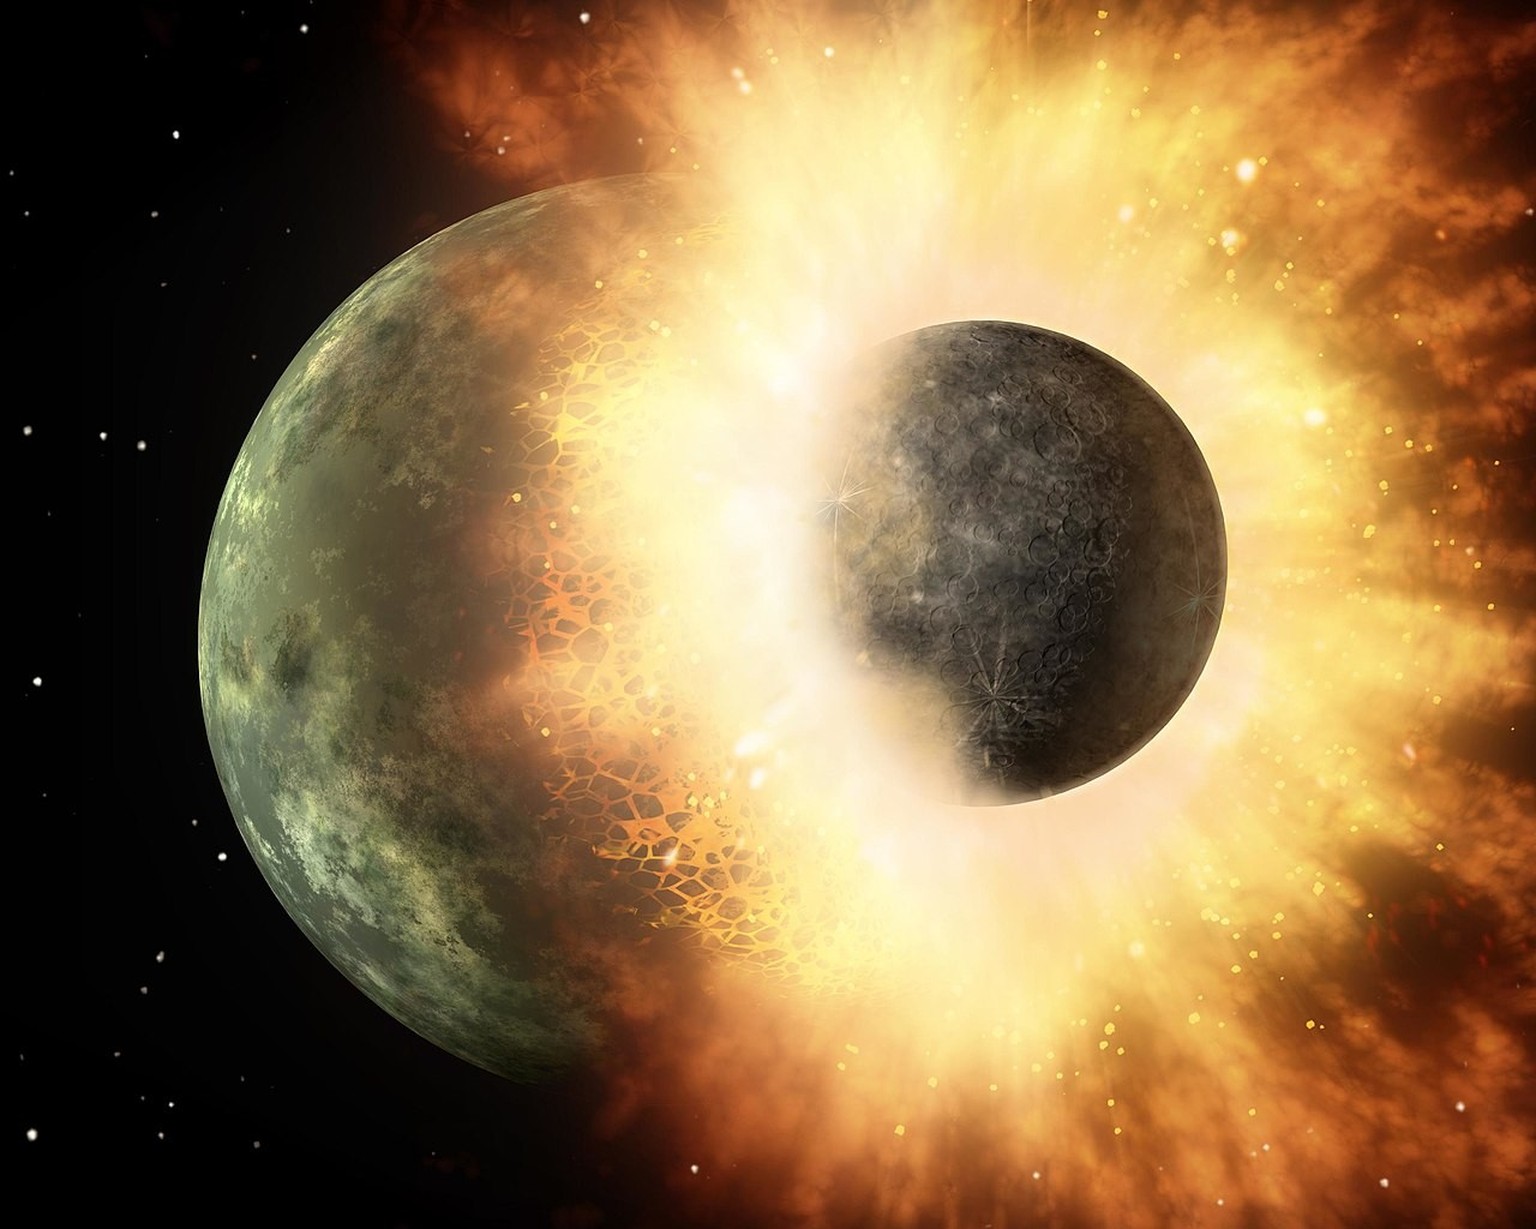 Künstlerische Darstellung der Kollision zweier Planeten.
https://de.wikipedia.org/wiki/Theia_(Protoplanet)#/media/Datei:Artist&#039;s_concept_of_collision_at_HD_172555.jpg